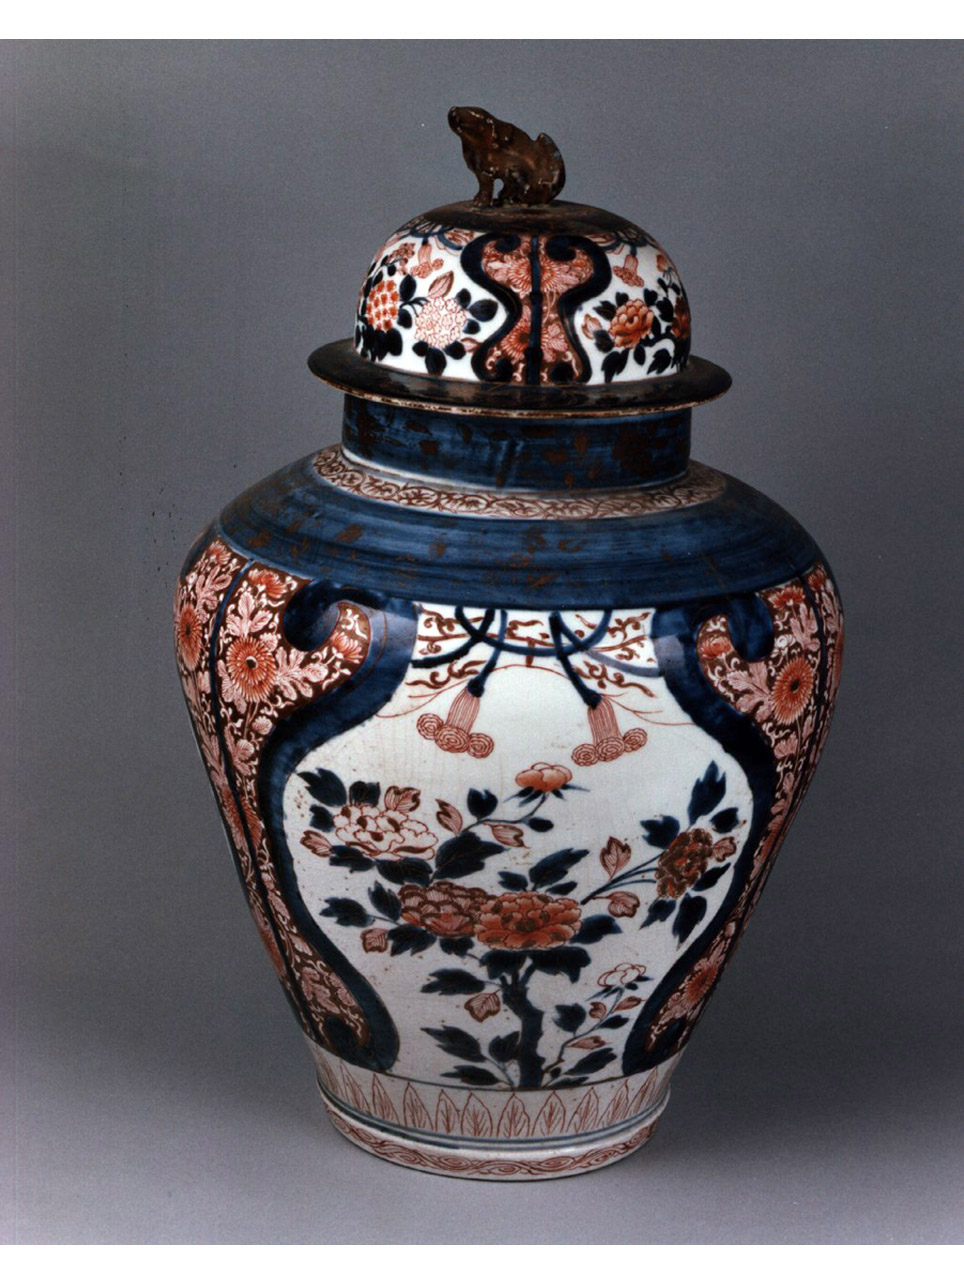 motivi decorativi vegetali e animali (vaso) - manifattura giapponese (secc. XVII/ XVIII)